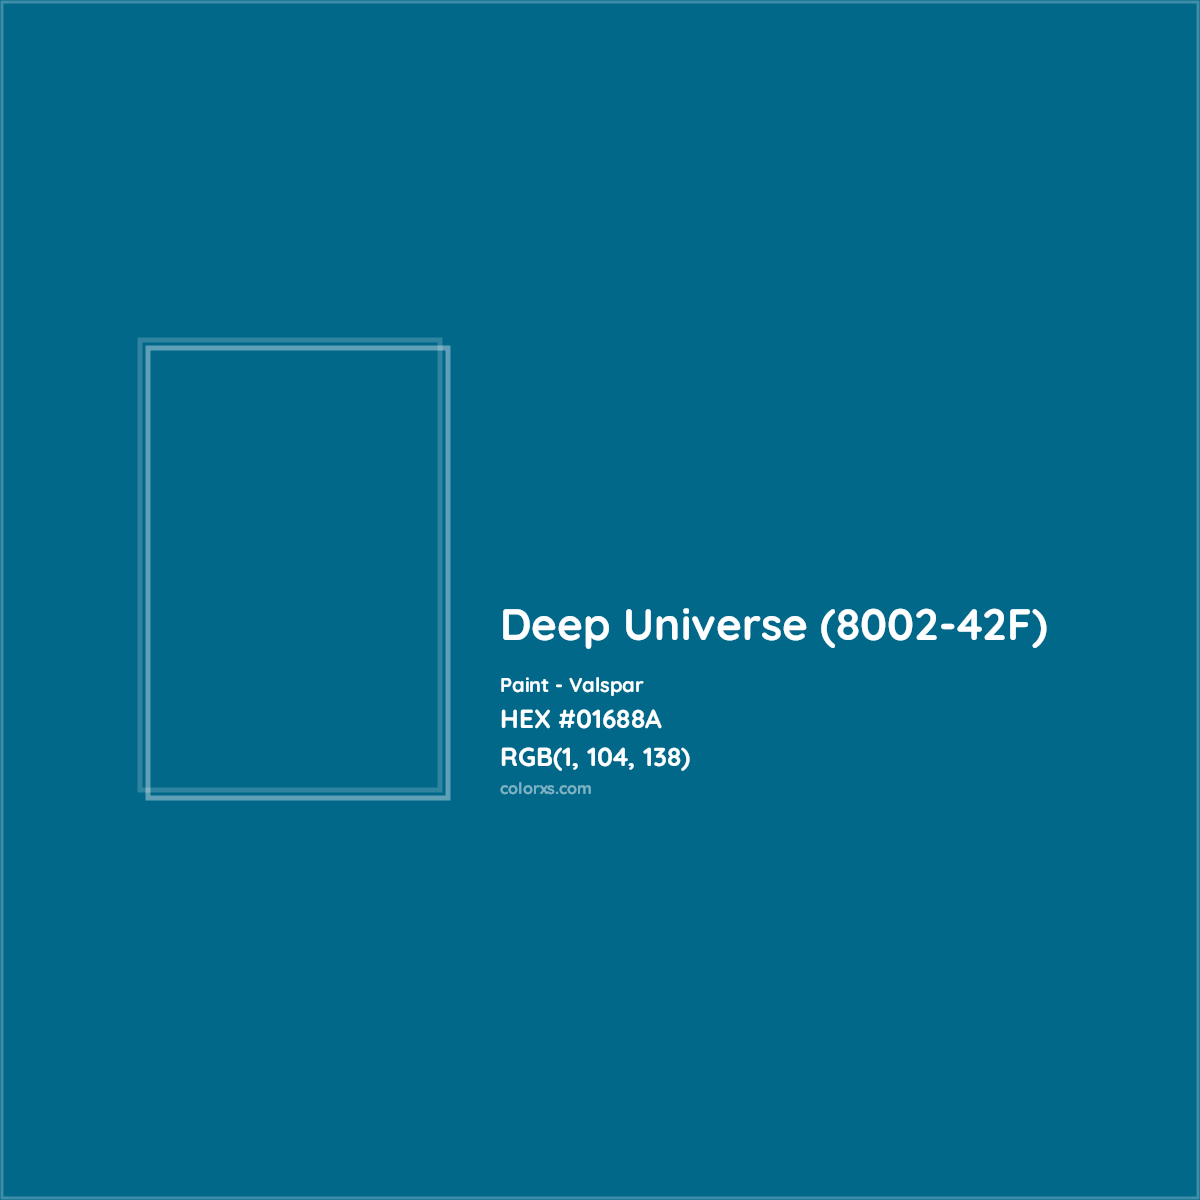 HEX #01688A Deep Universe (8002-42F) Paint Valspar - Color Code